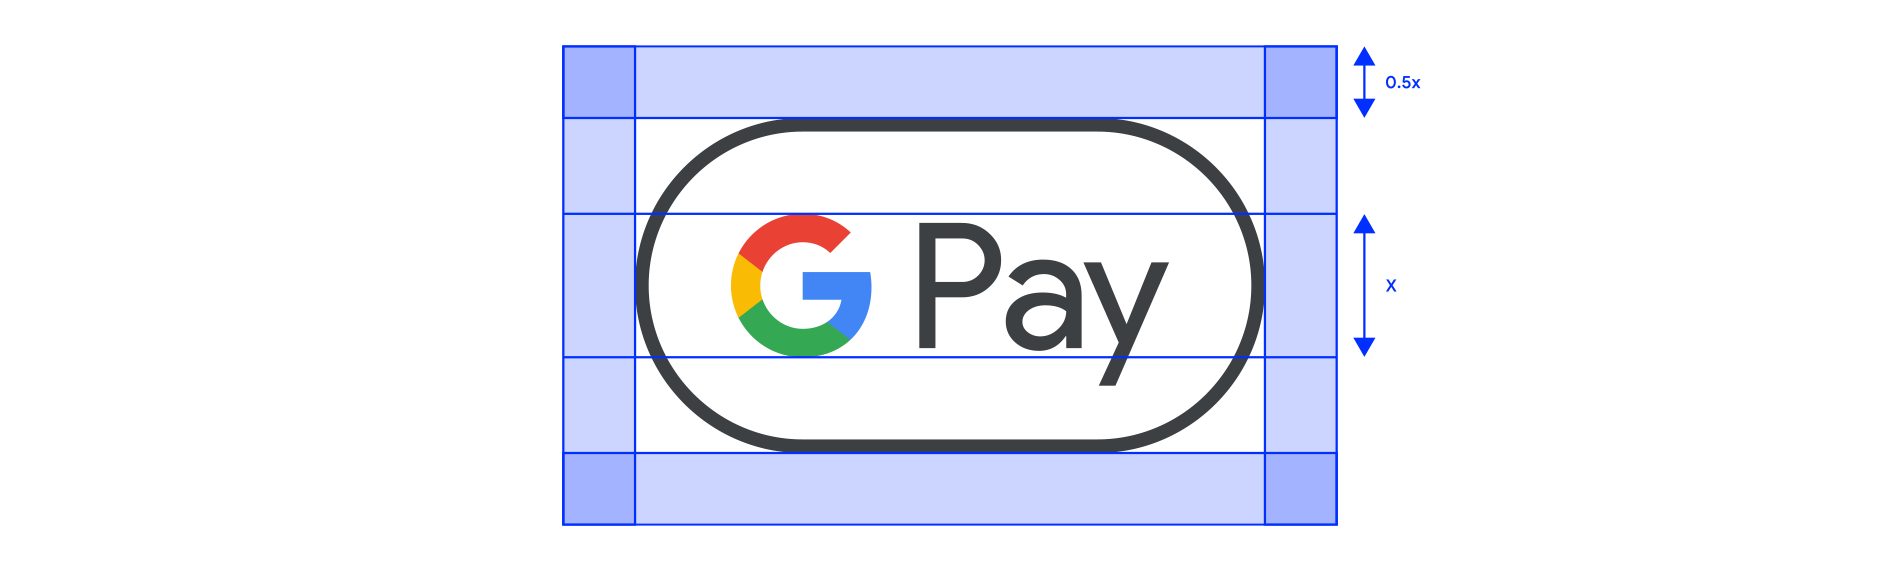 Google Pay マークのクリアスペースの例